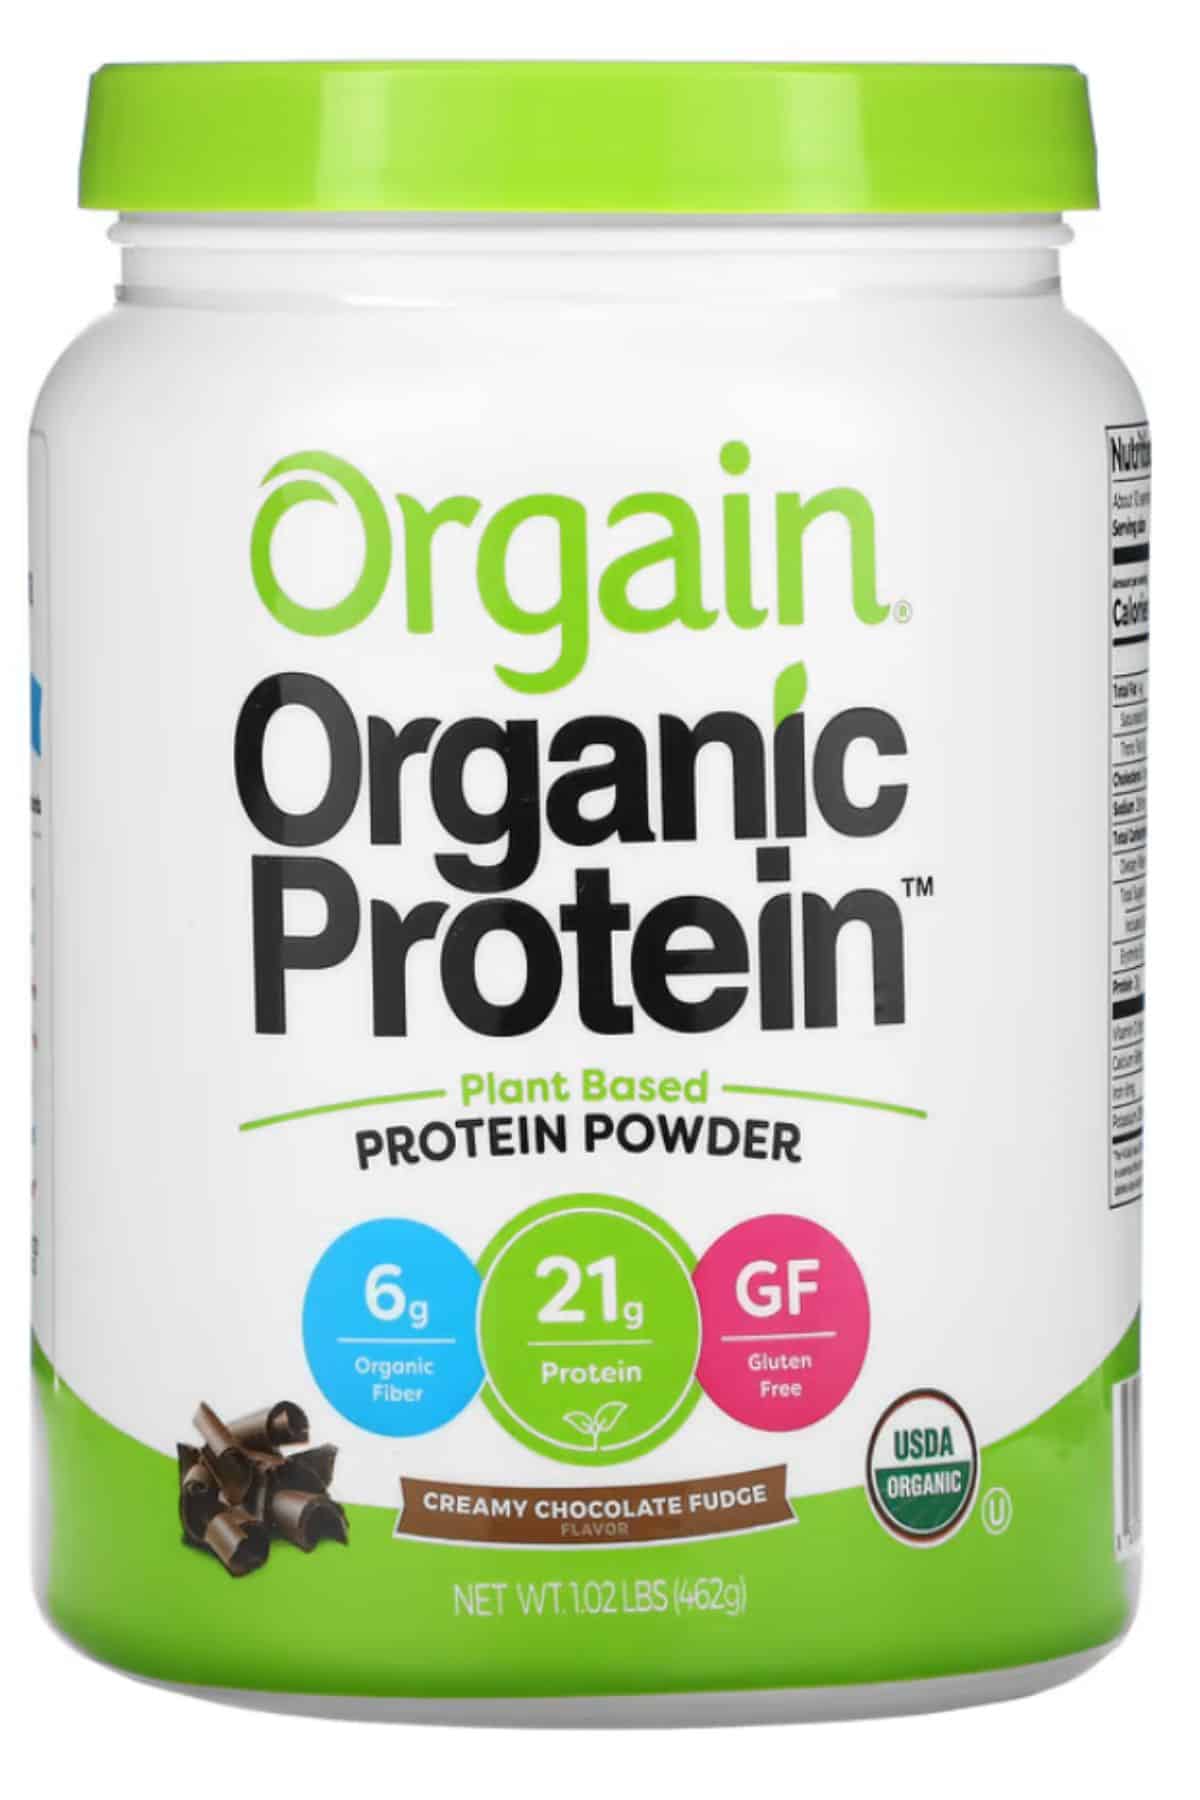 Orgain Organix protein powder.